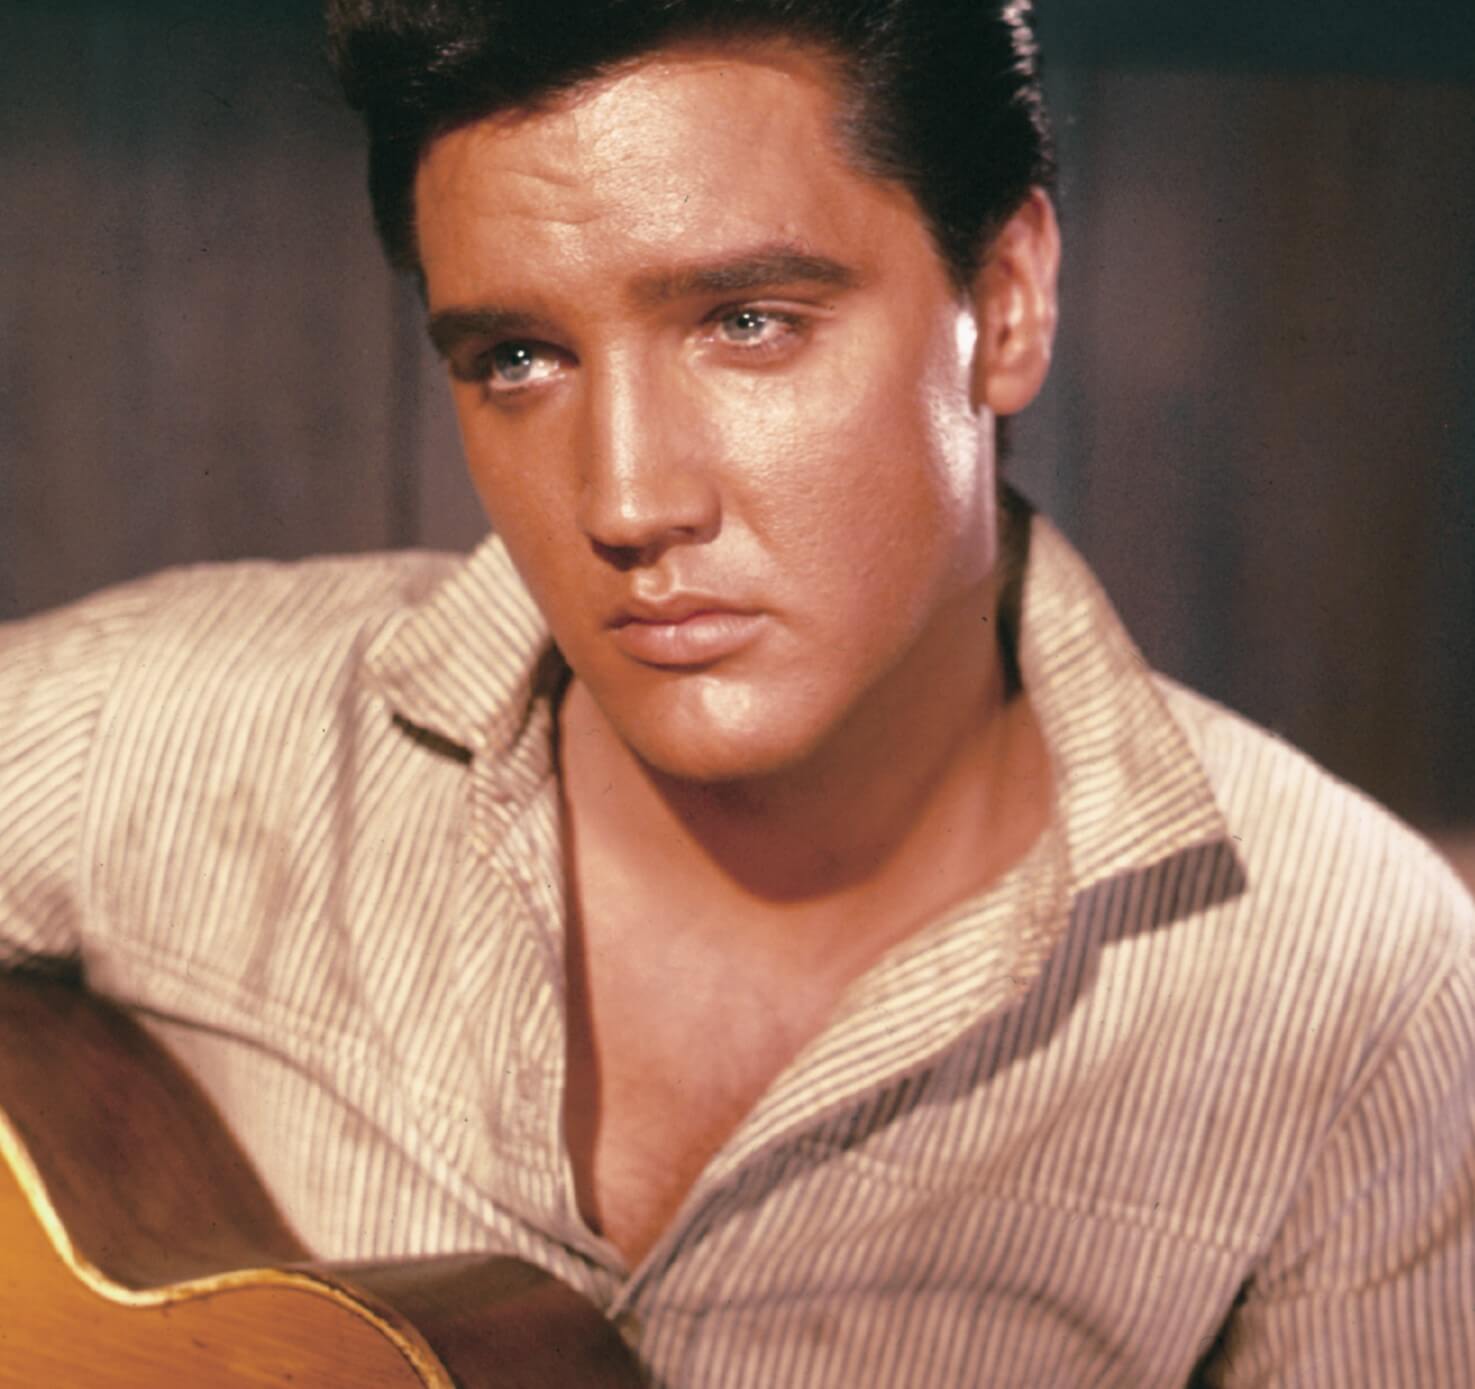 Elvis Presley looking sad